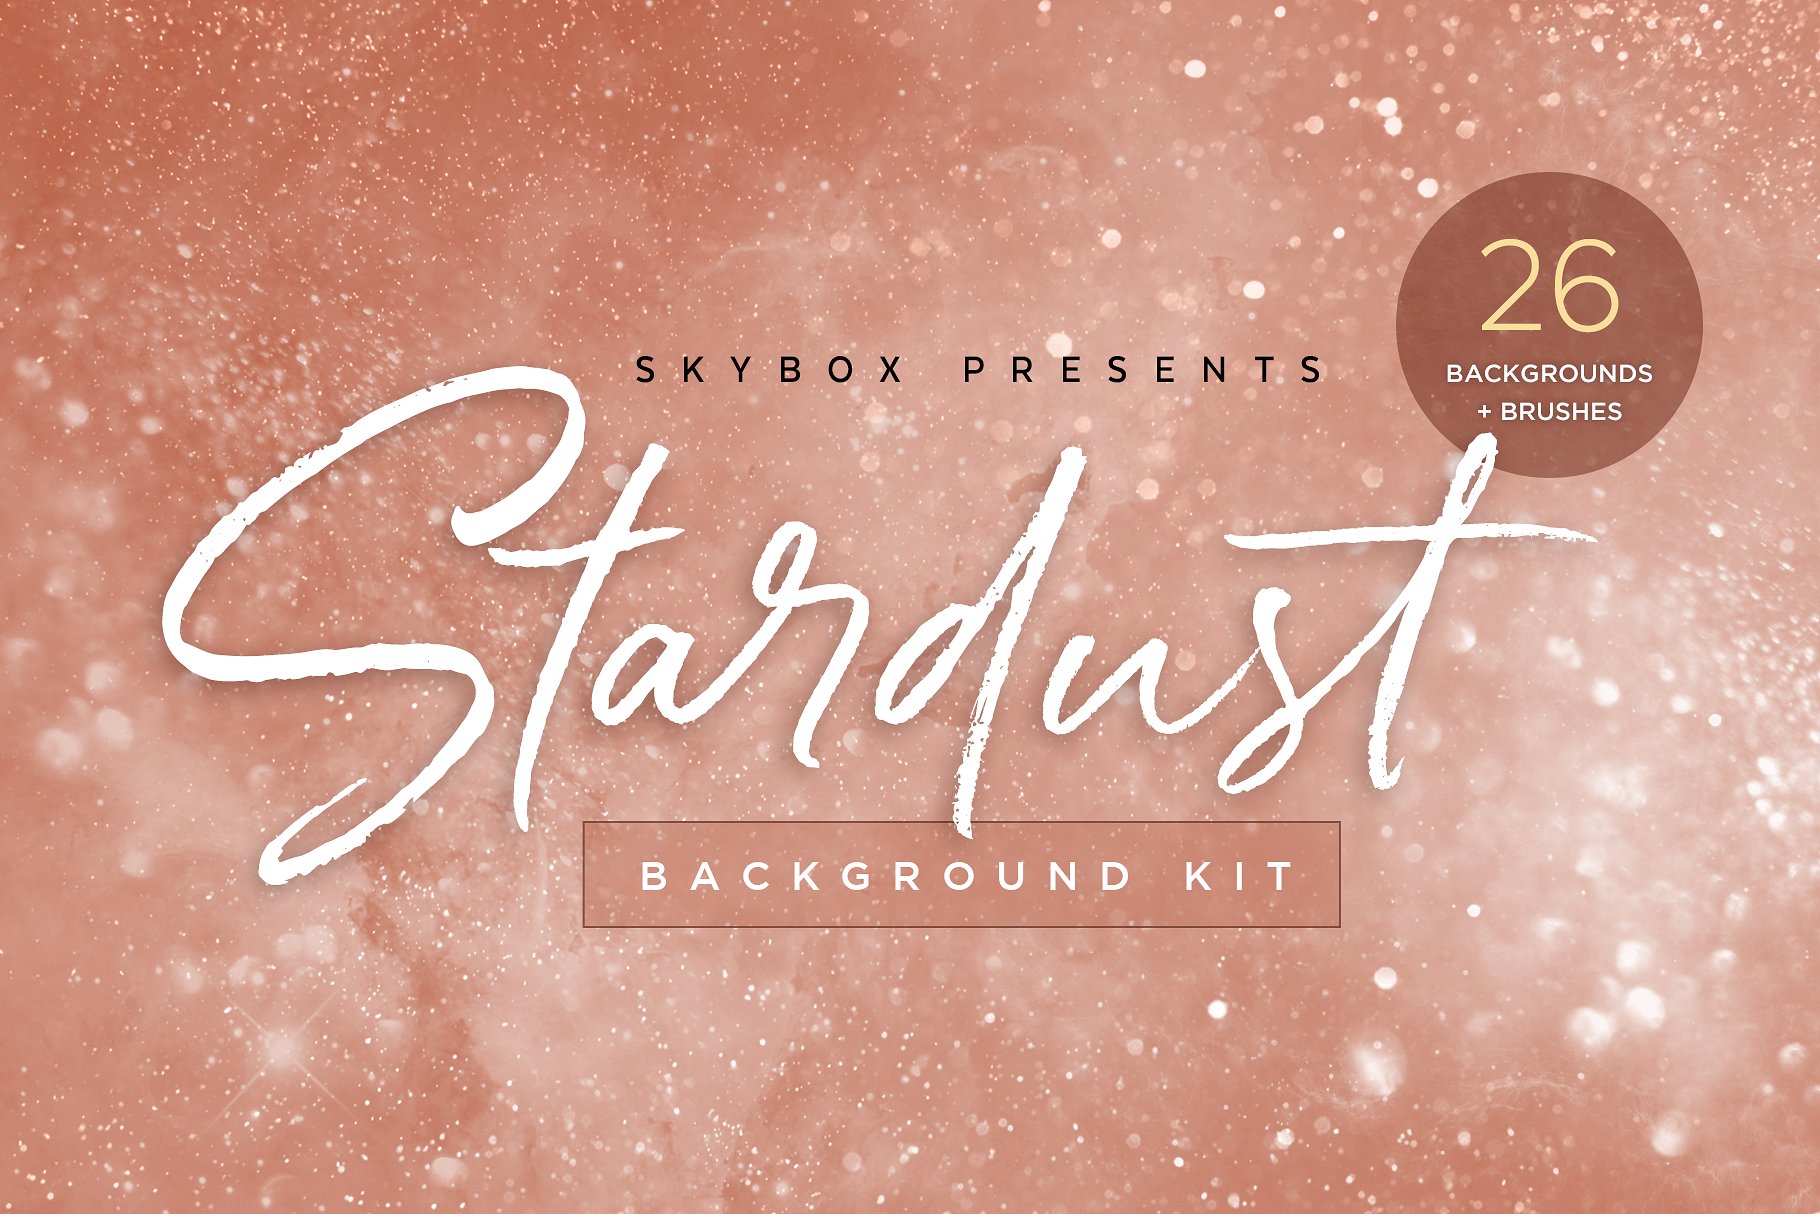 迷离闪烁星团和宇宙背景套件 Stardust Universe Background Kit插图